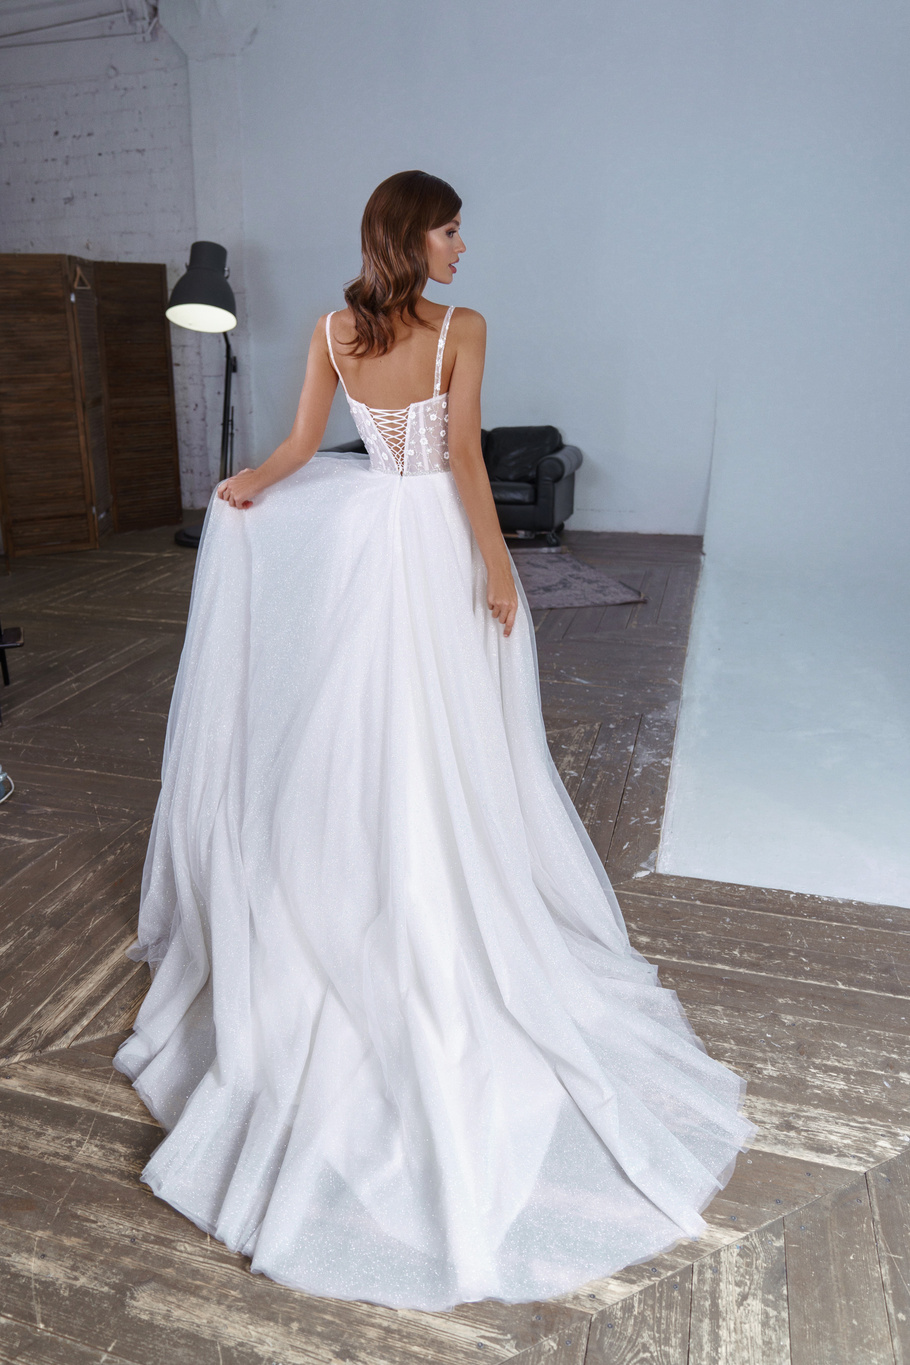 Купить свадебное платье «Флавия» Патрисия из коллекции 2020 года в Ярославле